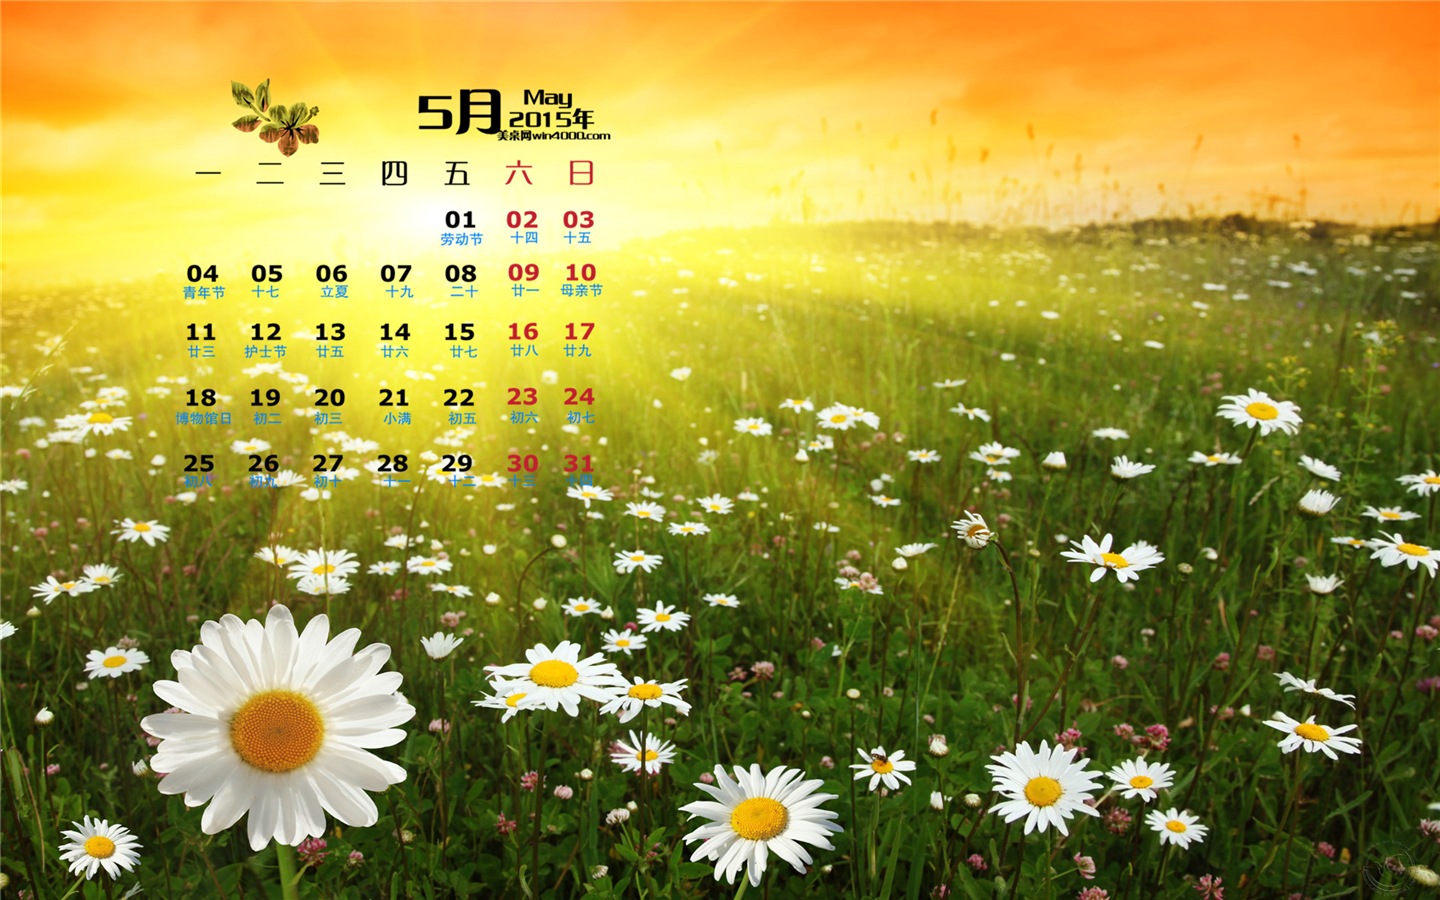 Mai 2015 Kalender Wallpaper (1) #15 - 1440x900